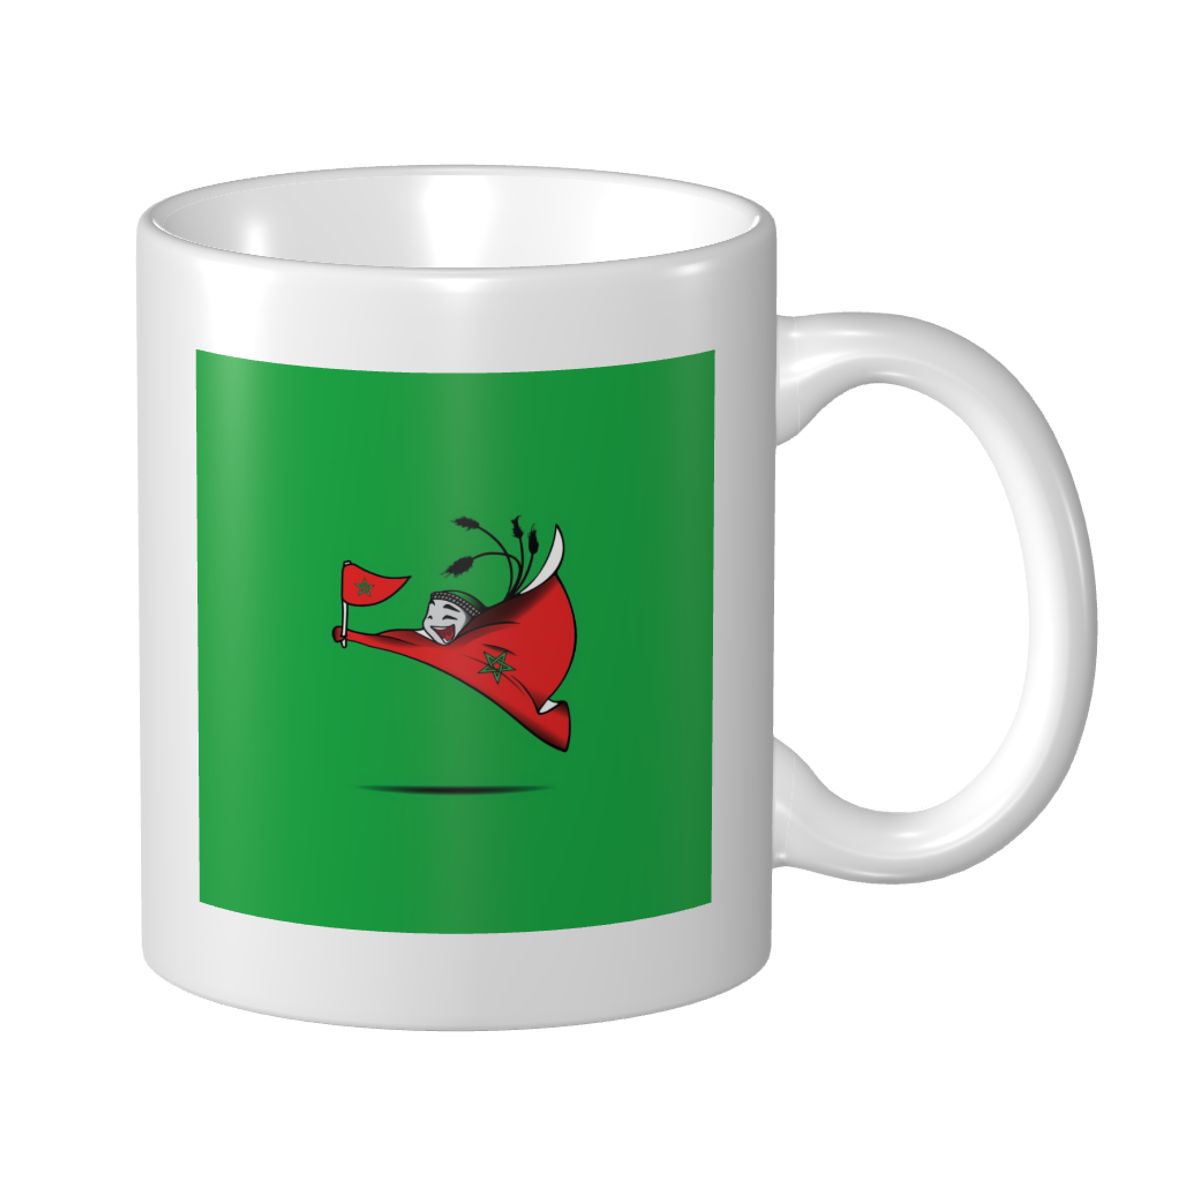 Morocco World Cup 2022 Mascot Mug